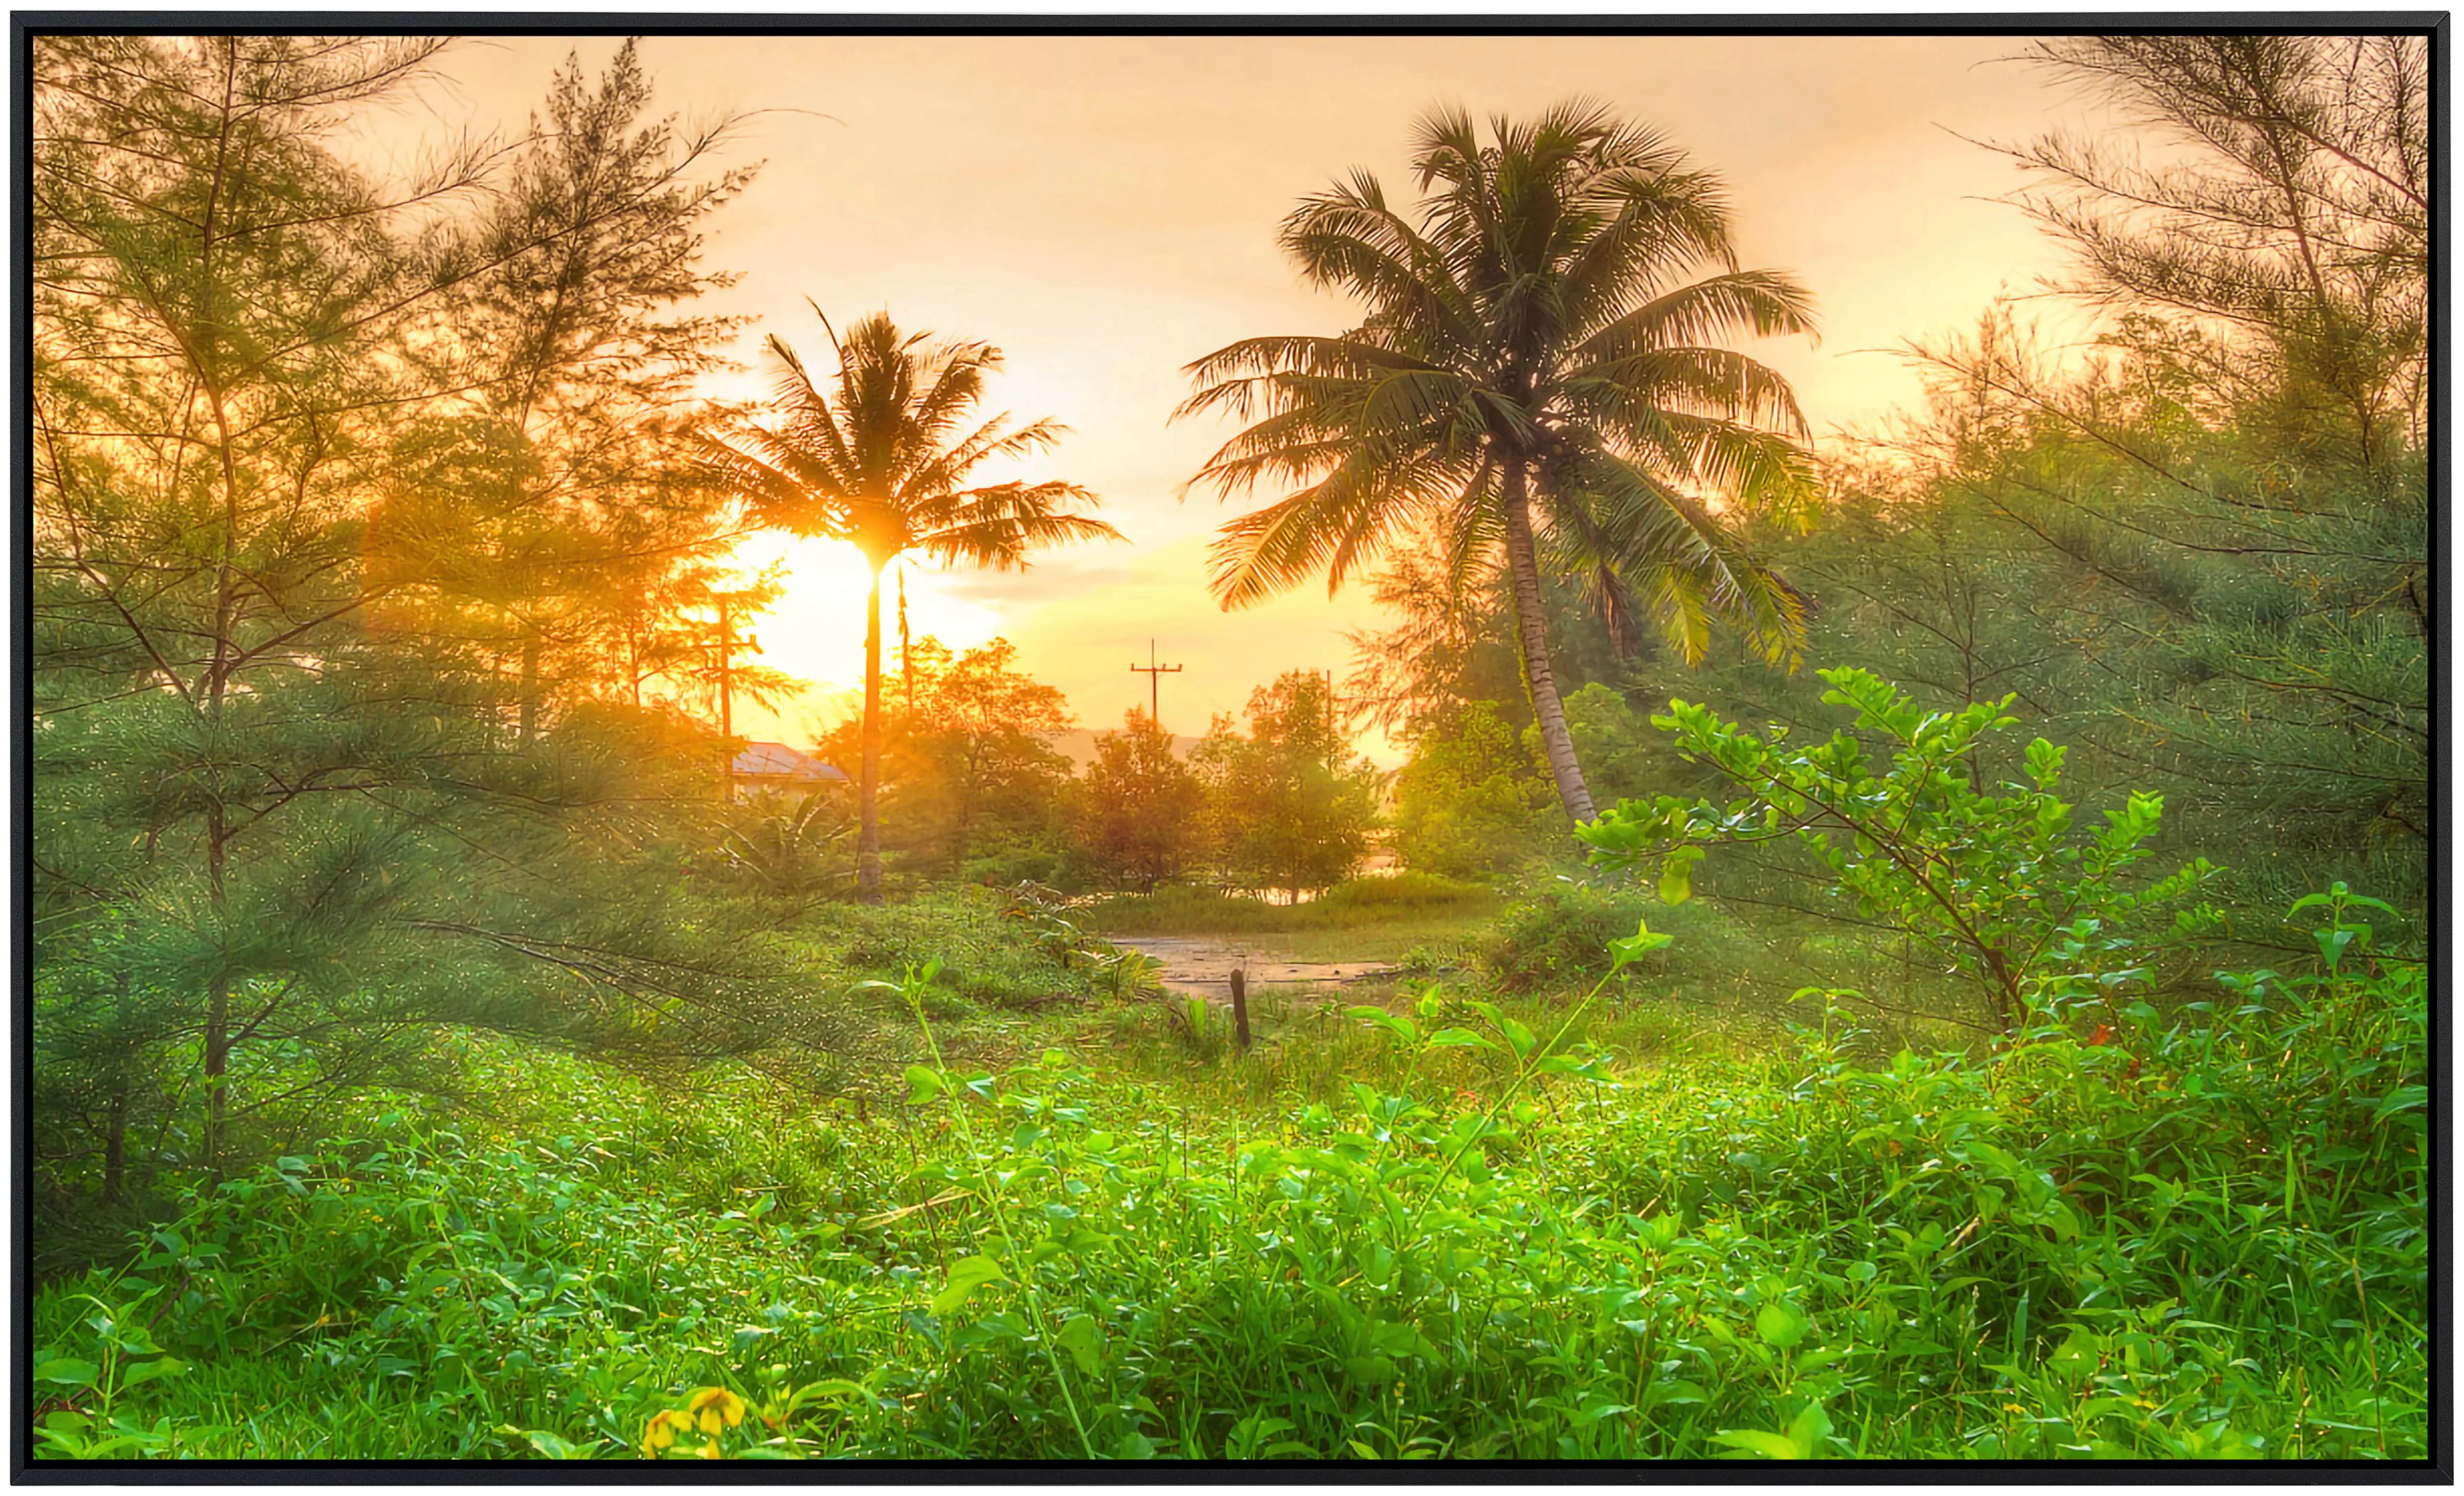 Papermoon Infrarotheizung »Erstaunlicher Dschungel Sonnenaufgang«, sehr ang günstig online kaufen